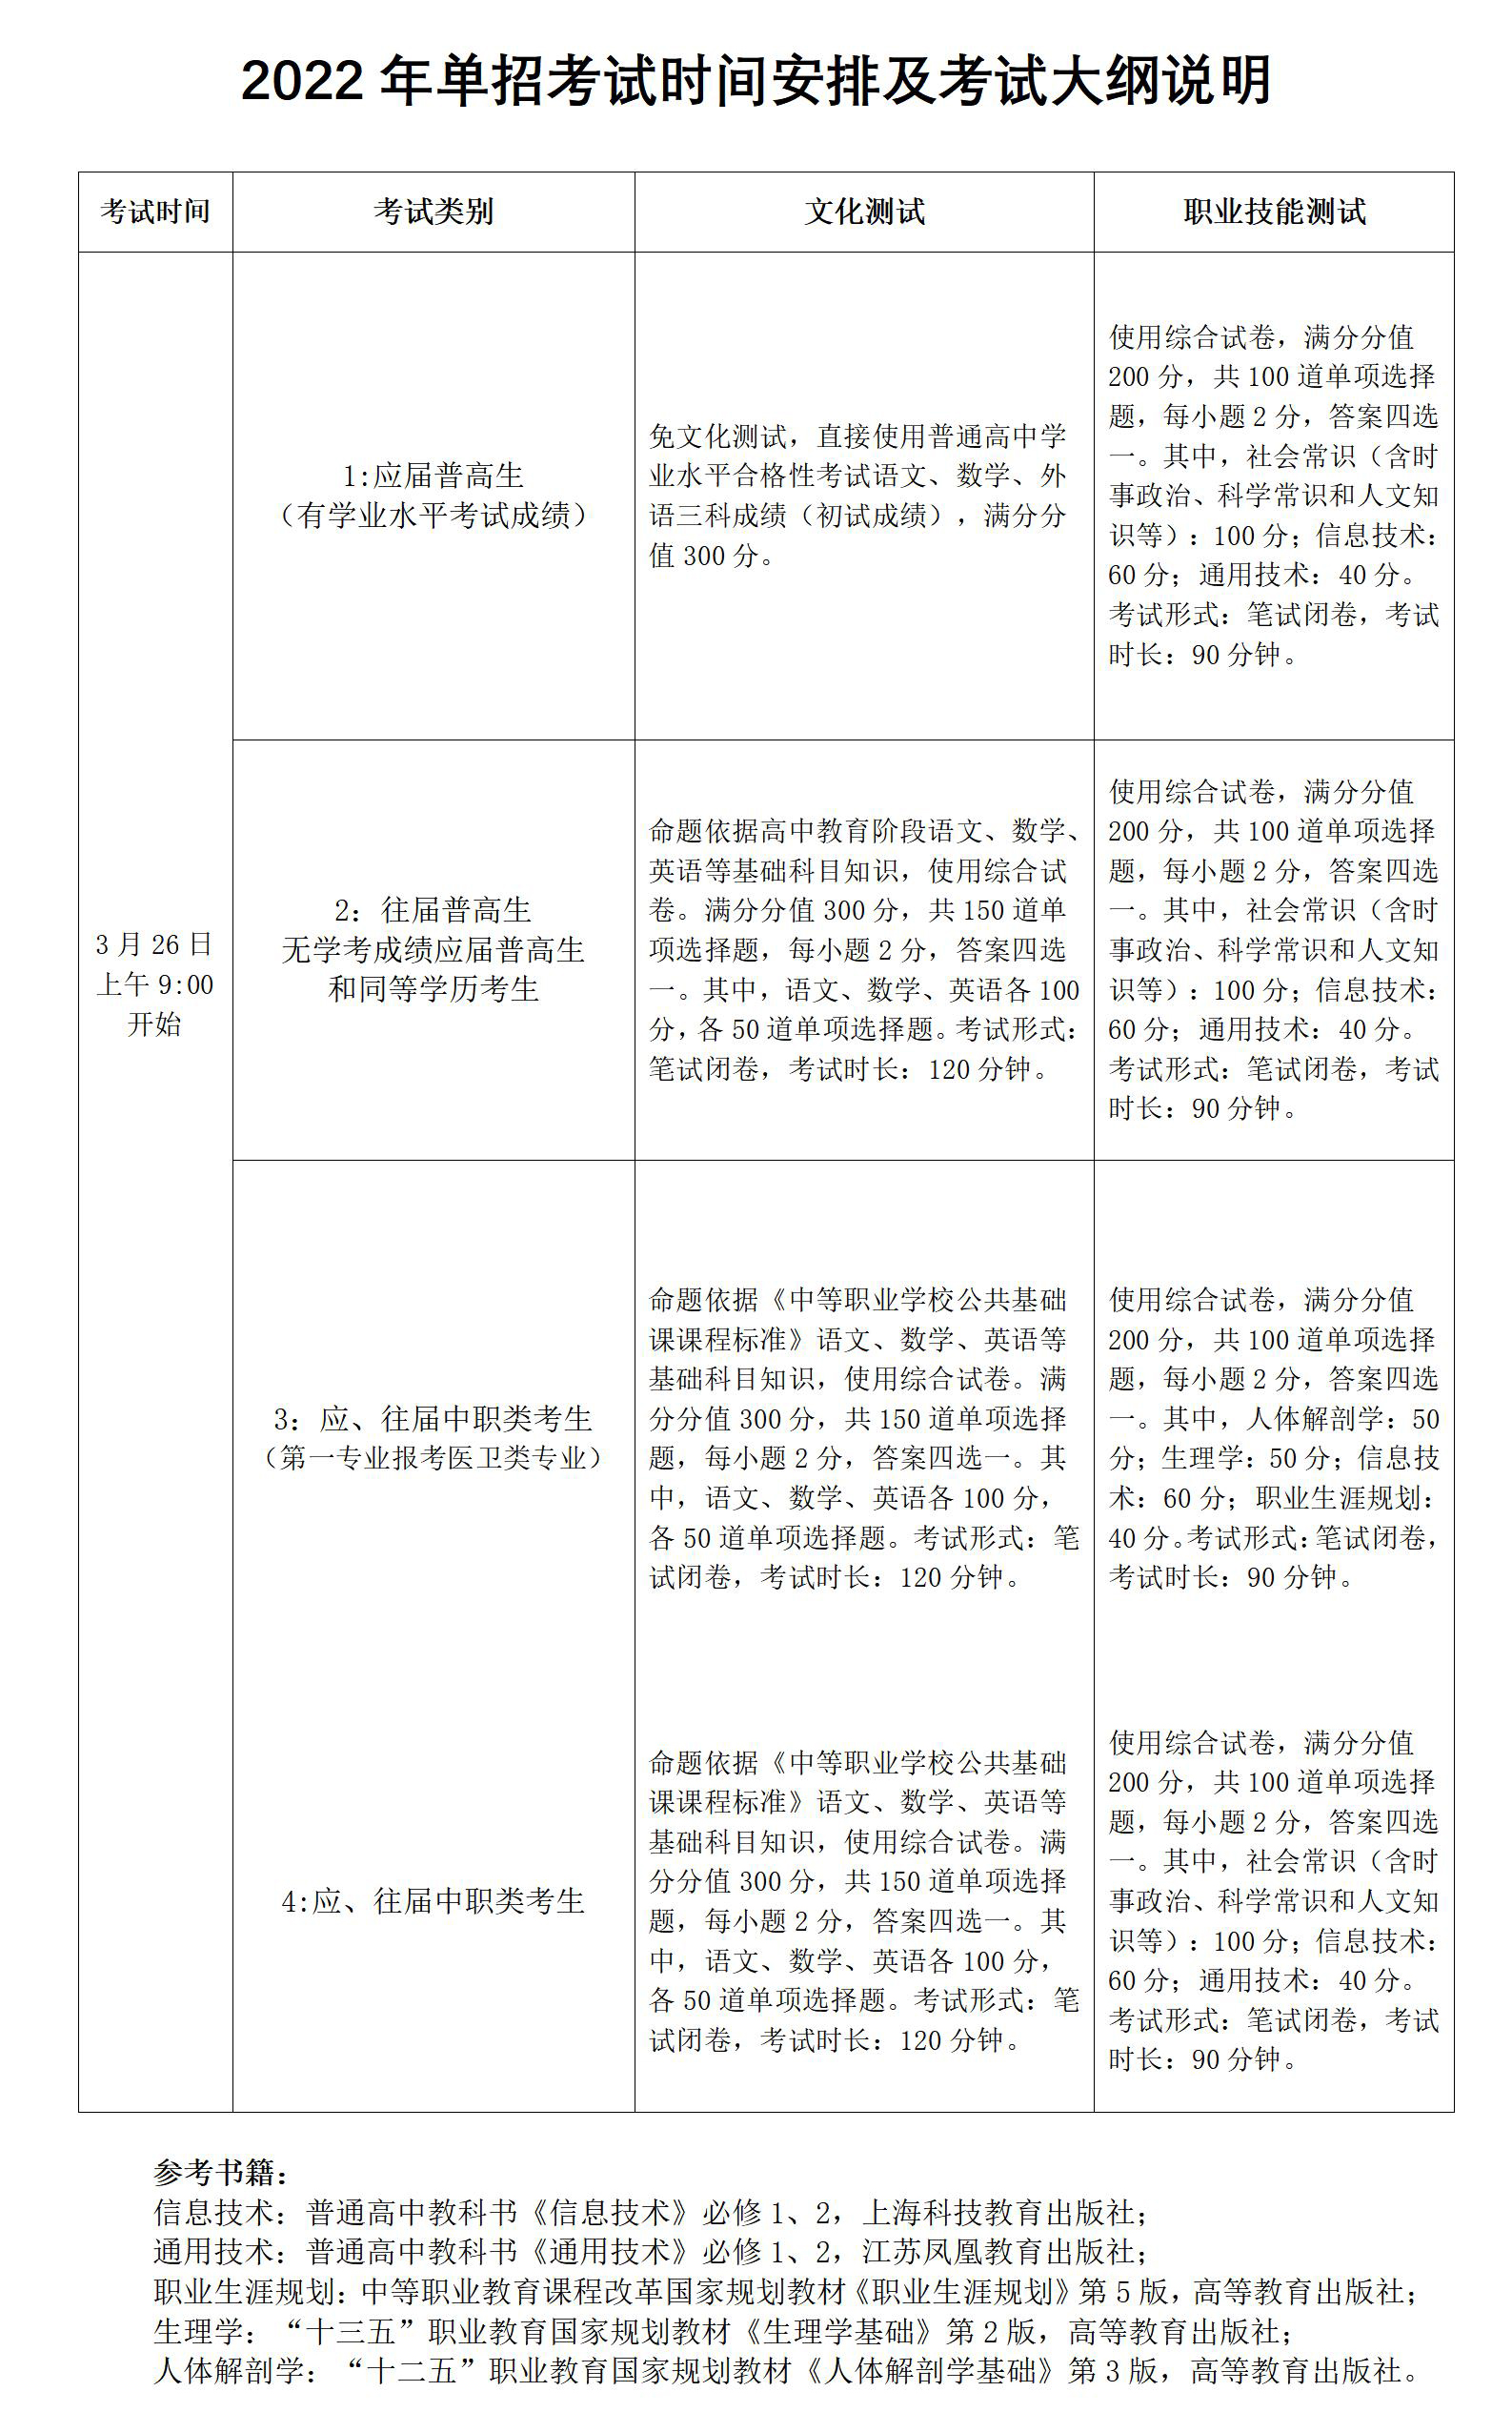 湖南电子科技职业学院2022年单独招生考试文化测试和职业技能测试方式考试大纲(1)_01.jpg